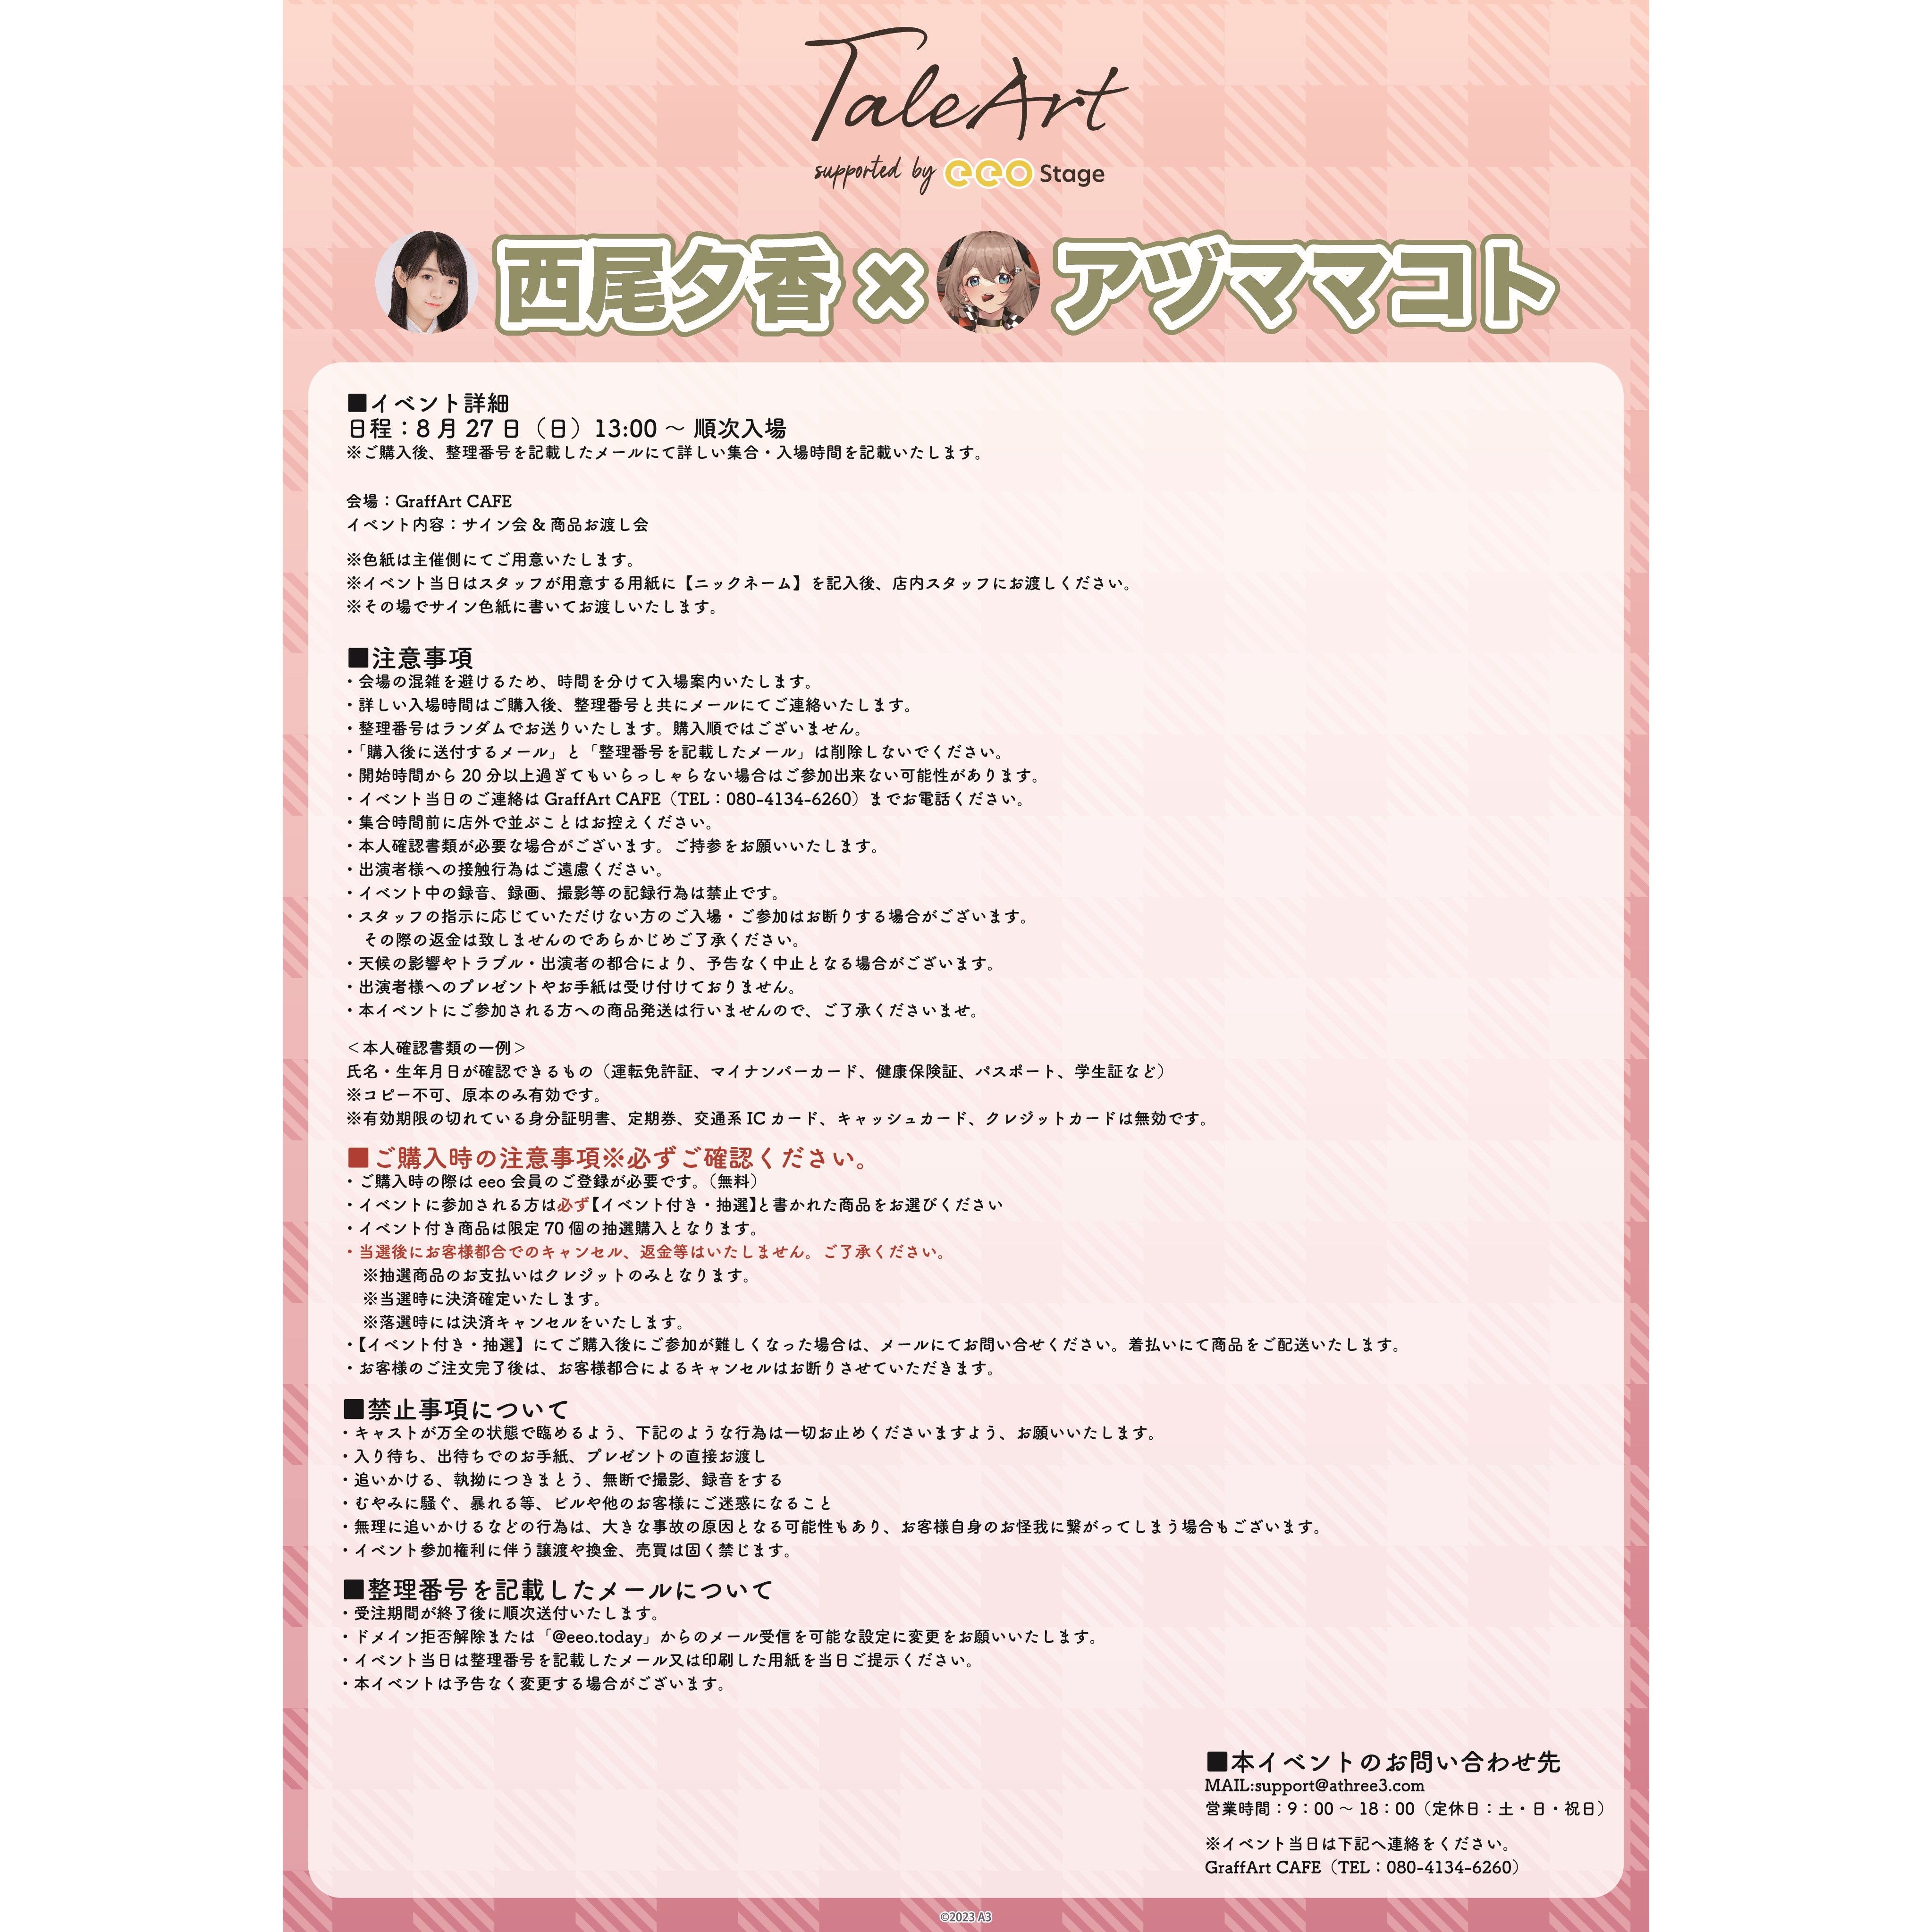 【イベント付き・抽選】TaleArt Pack「TaleArt」01/西尾夕香×アヅママコト